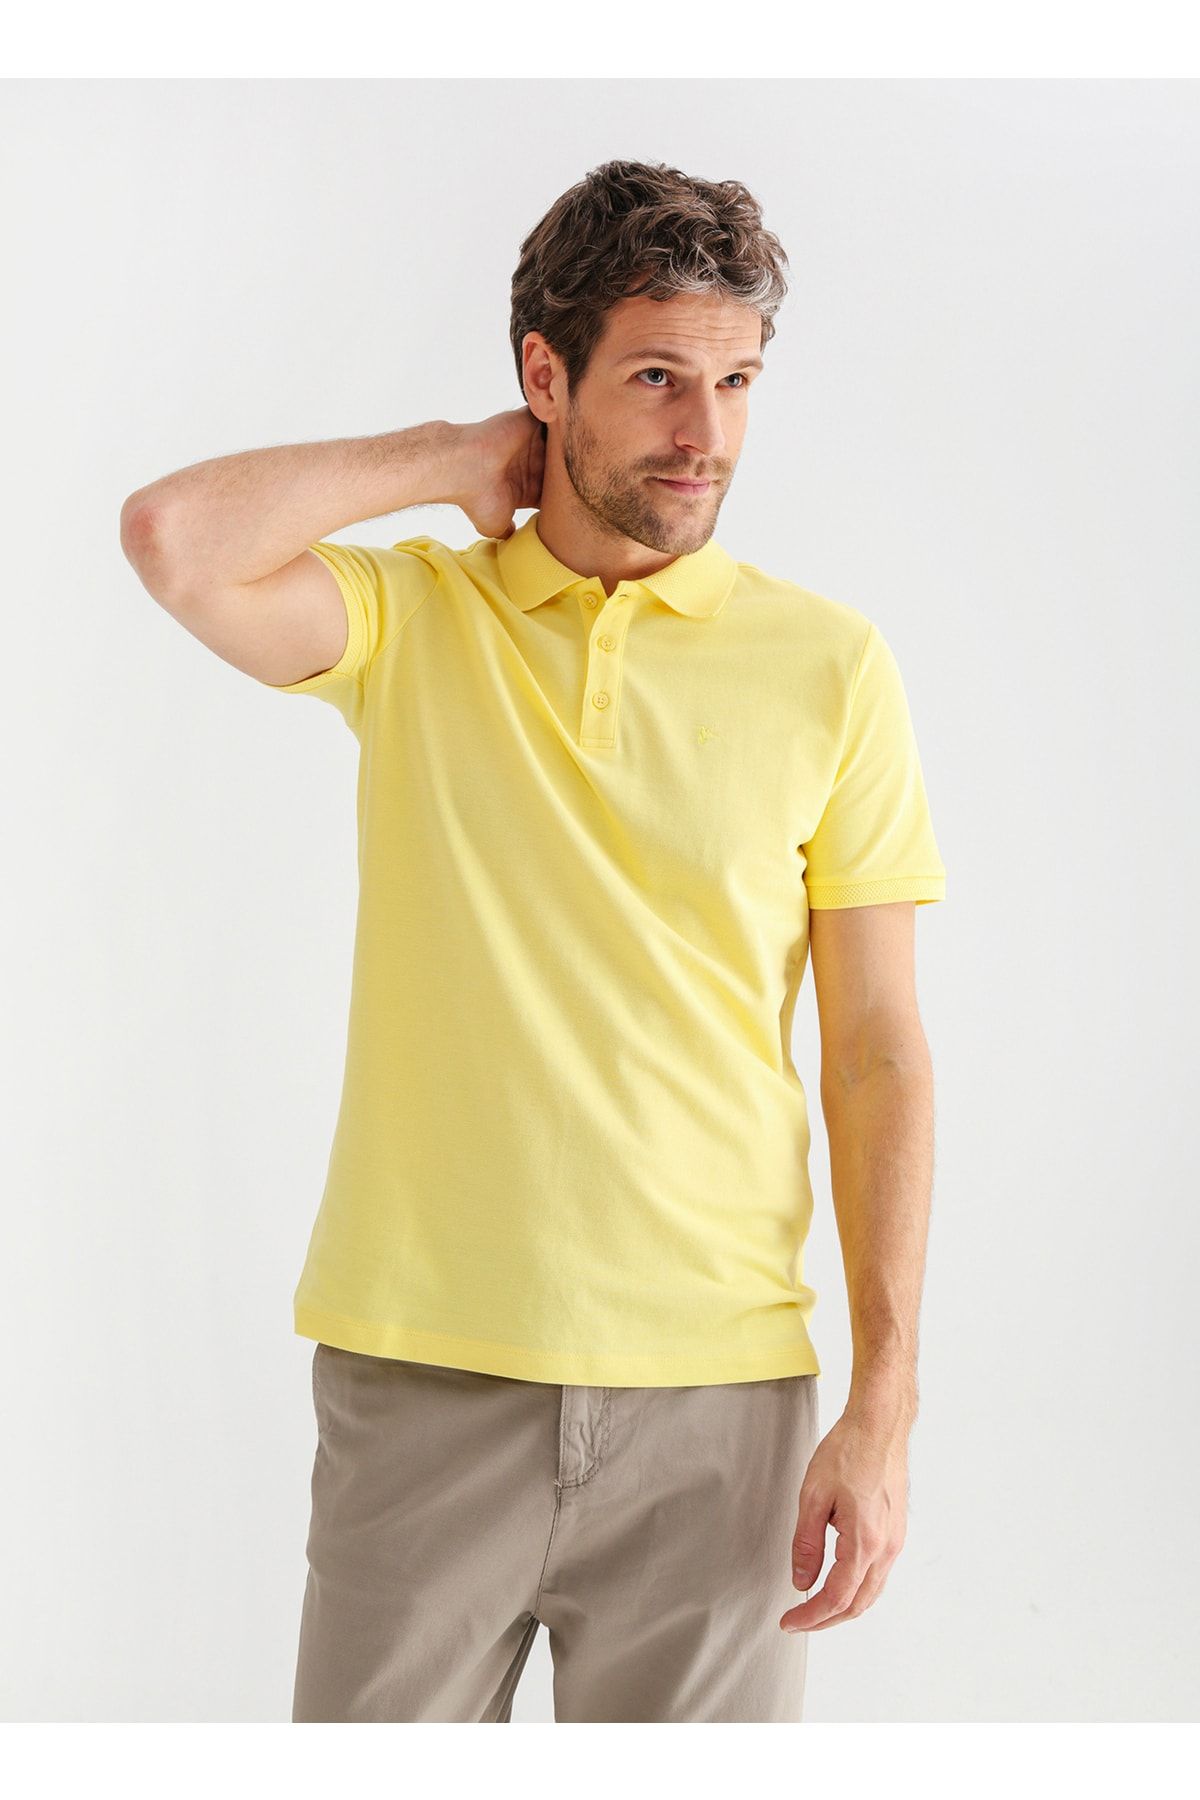 Fabrika Comfort Düz Sarı Erkek Polo T-shirt Cm Nobro K Cepsız